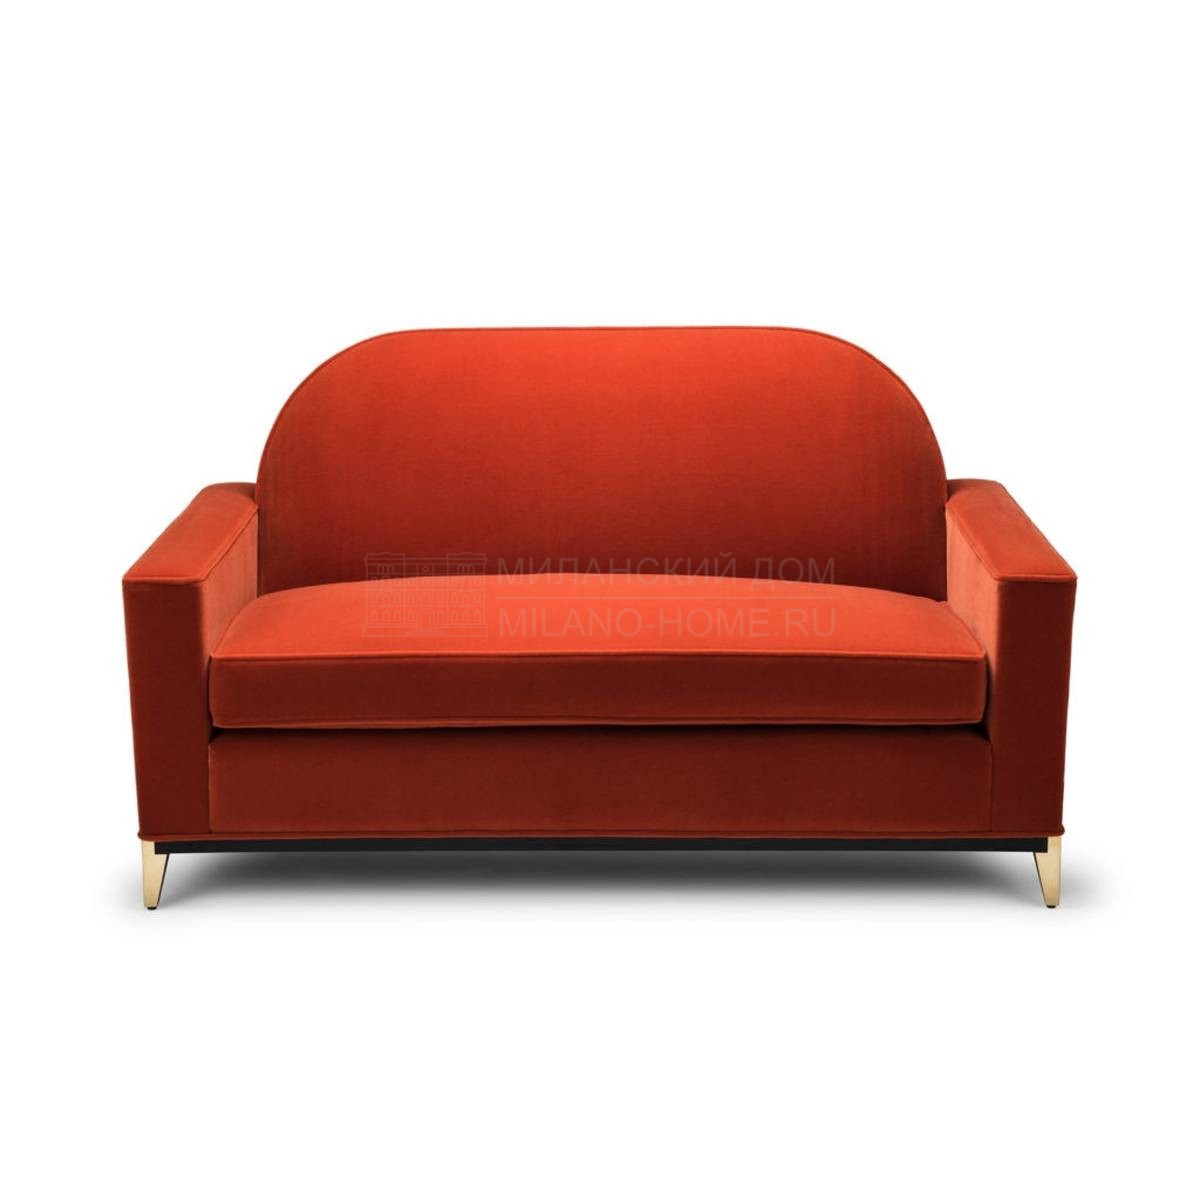 Прямой диван Rondure Two Seat Sofa из Великобритании фабрики AMY SOMERVILLE